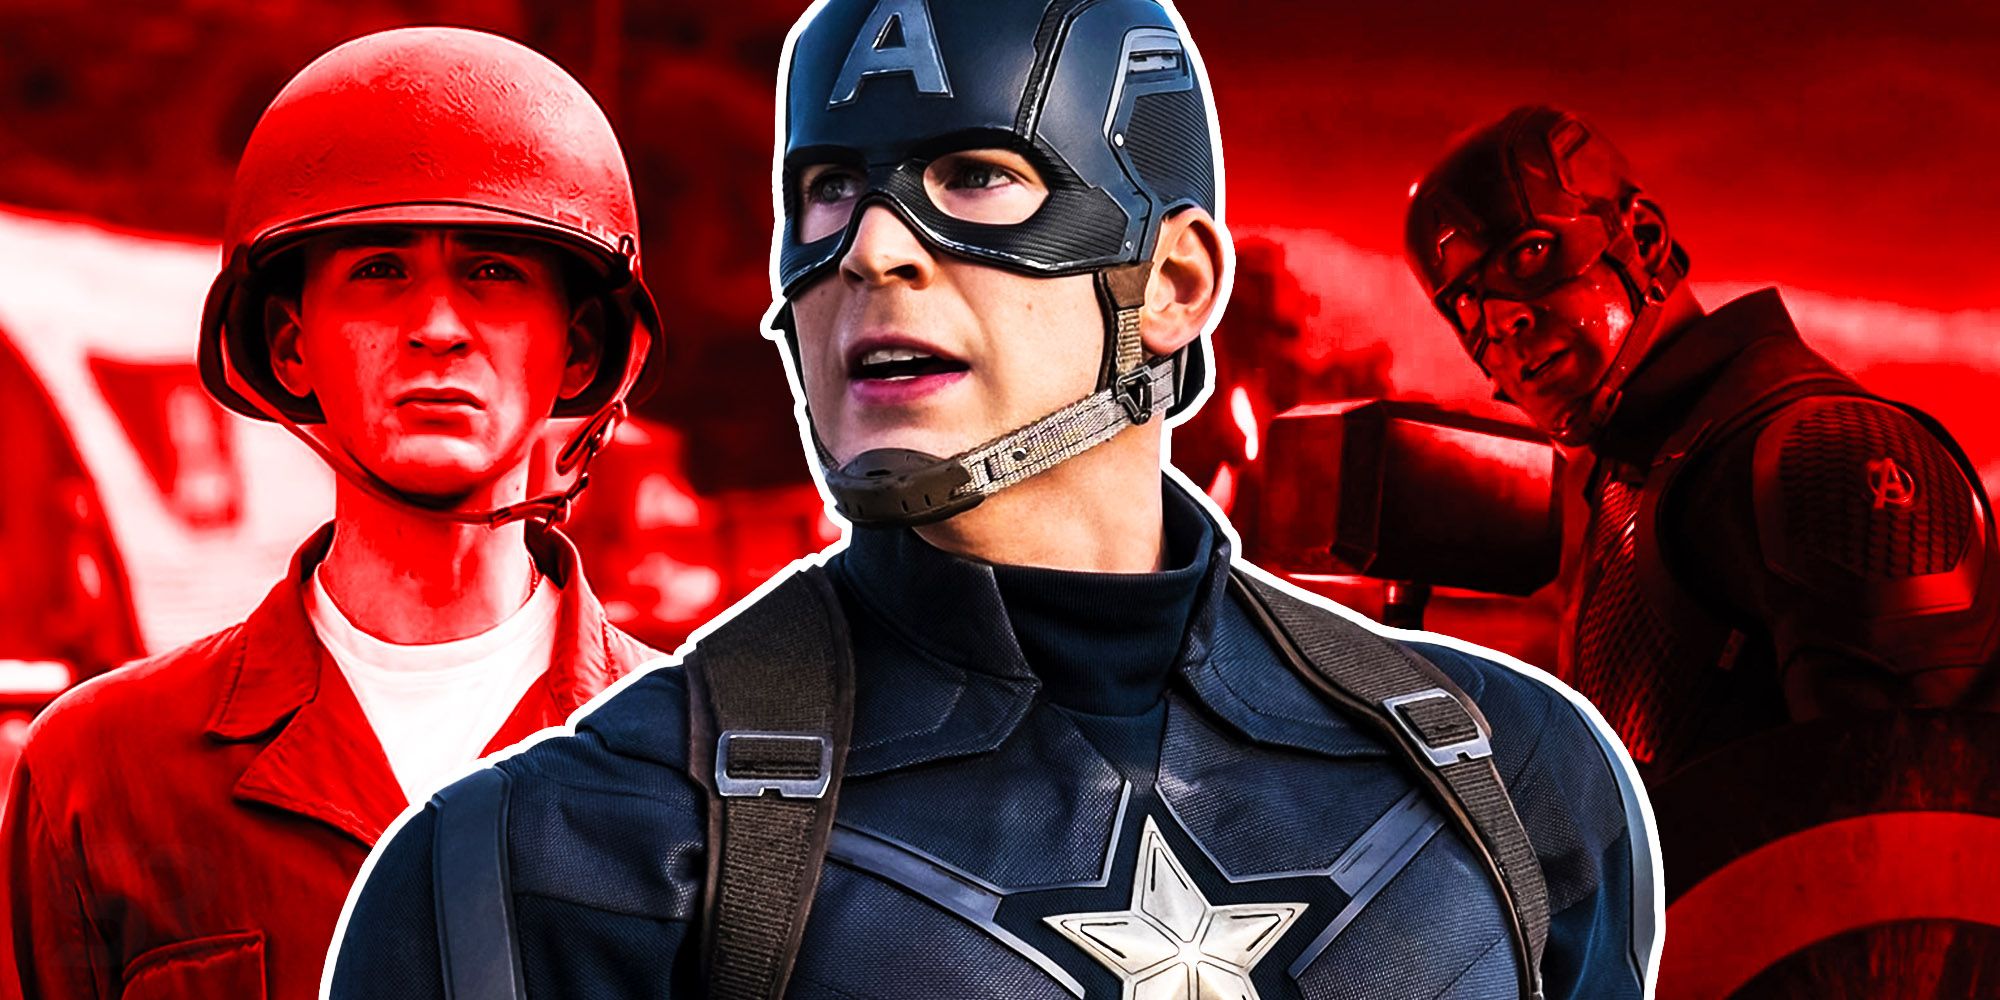 10 detalles sutiles que hicieron que el Capitán América de Chris Evans fuera tan perfecto